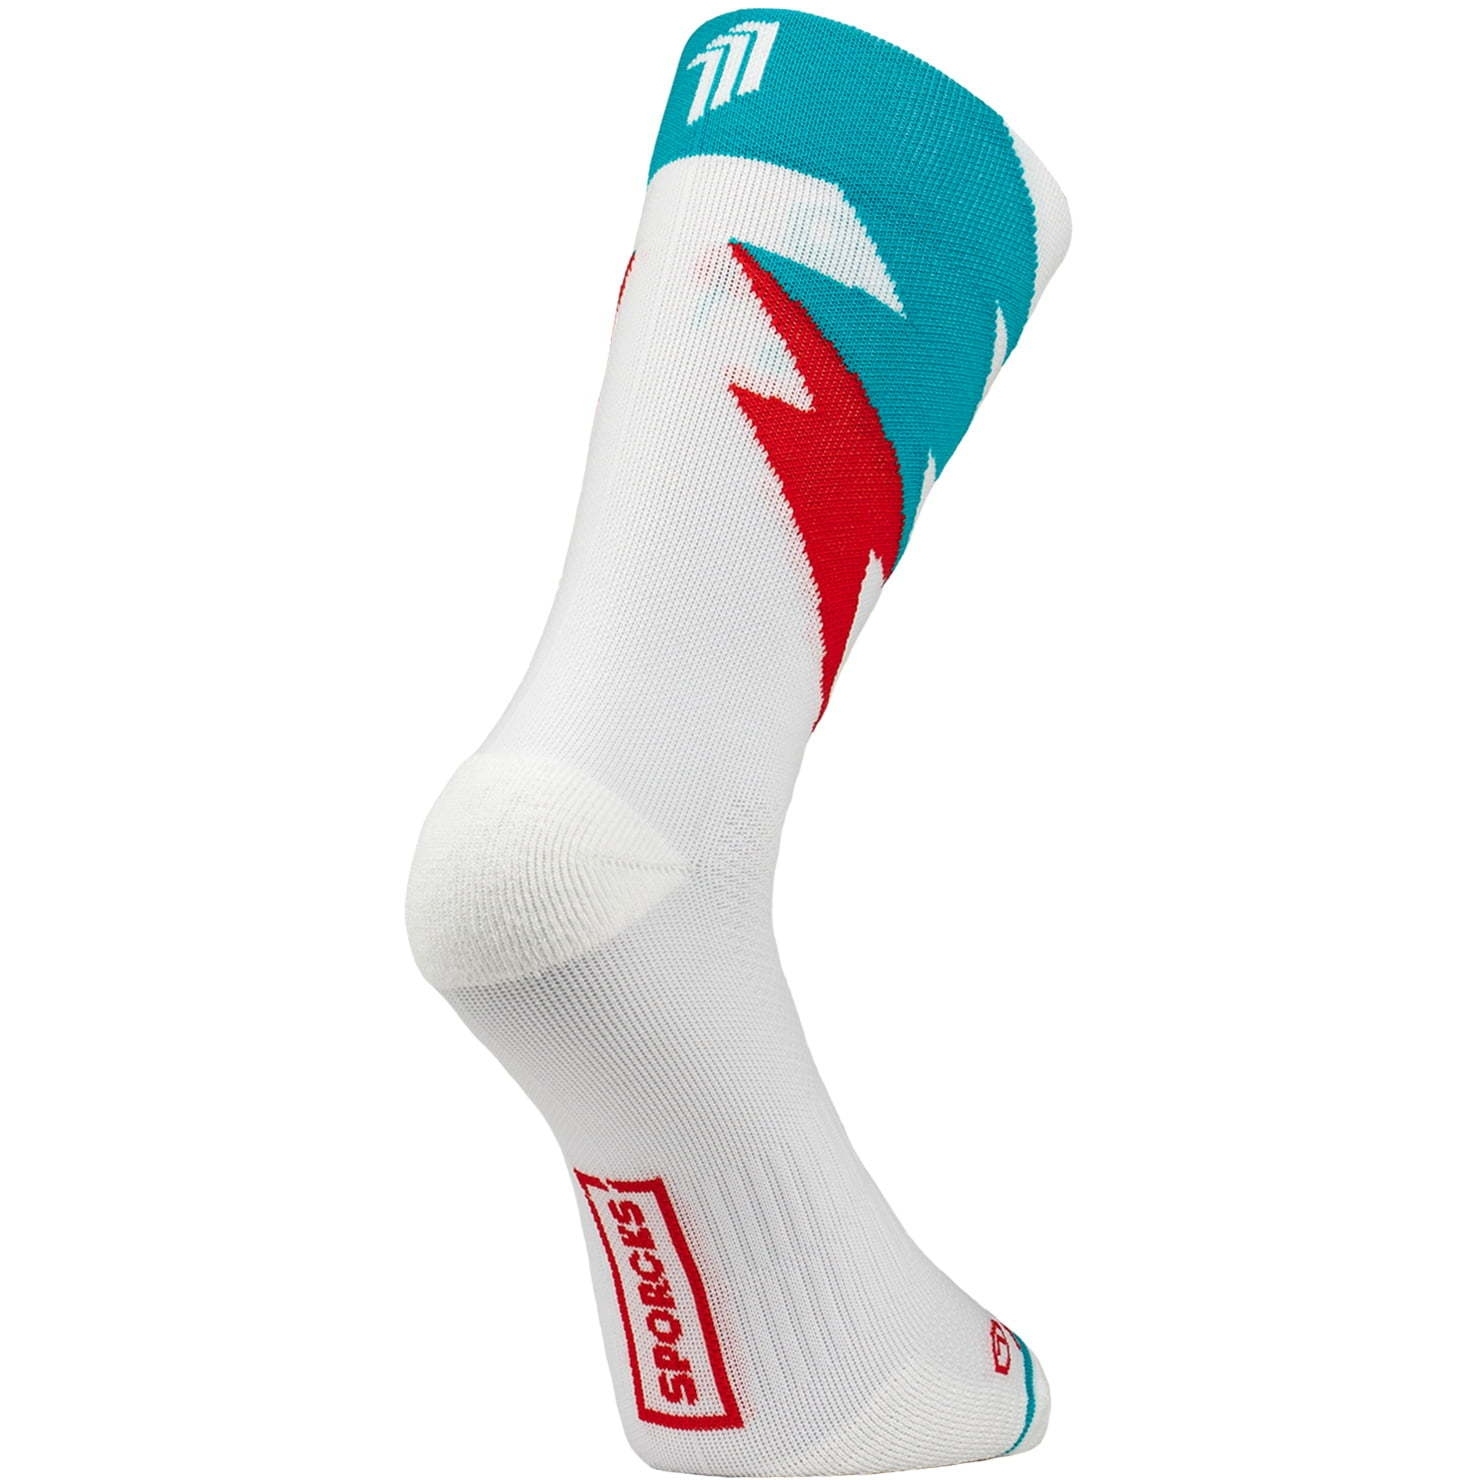 Productfoto van SPORCKS Running Socks - Mcqueen